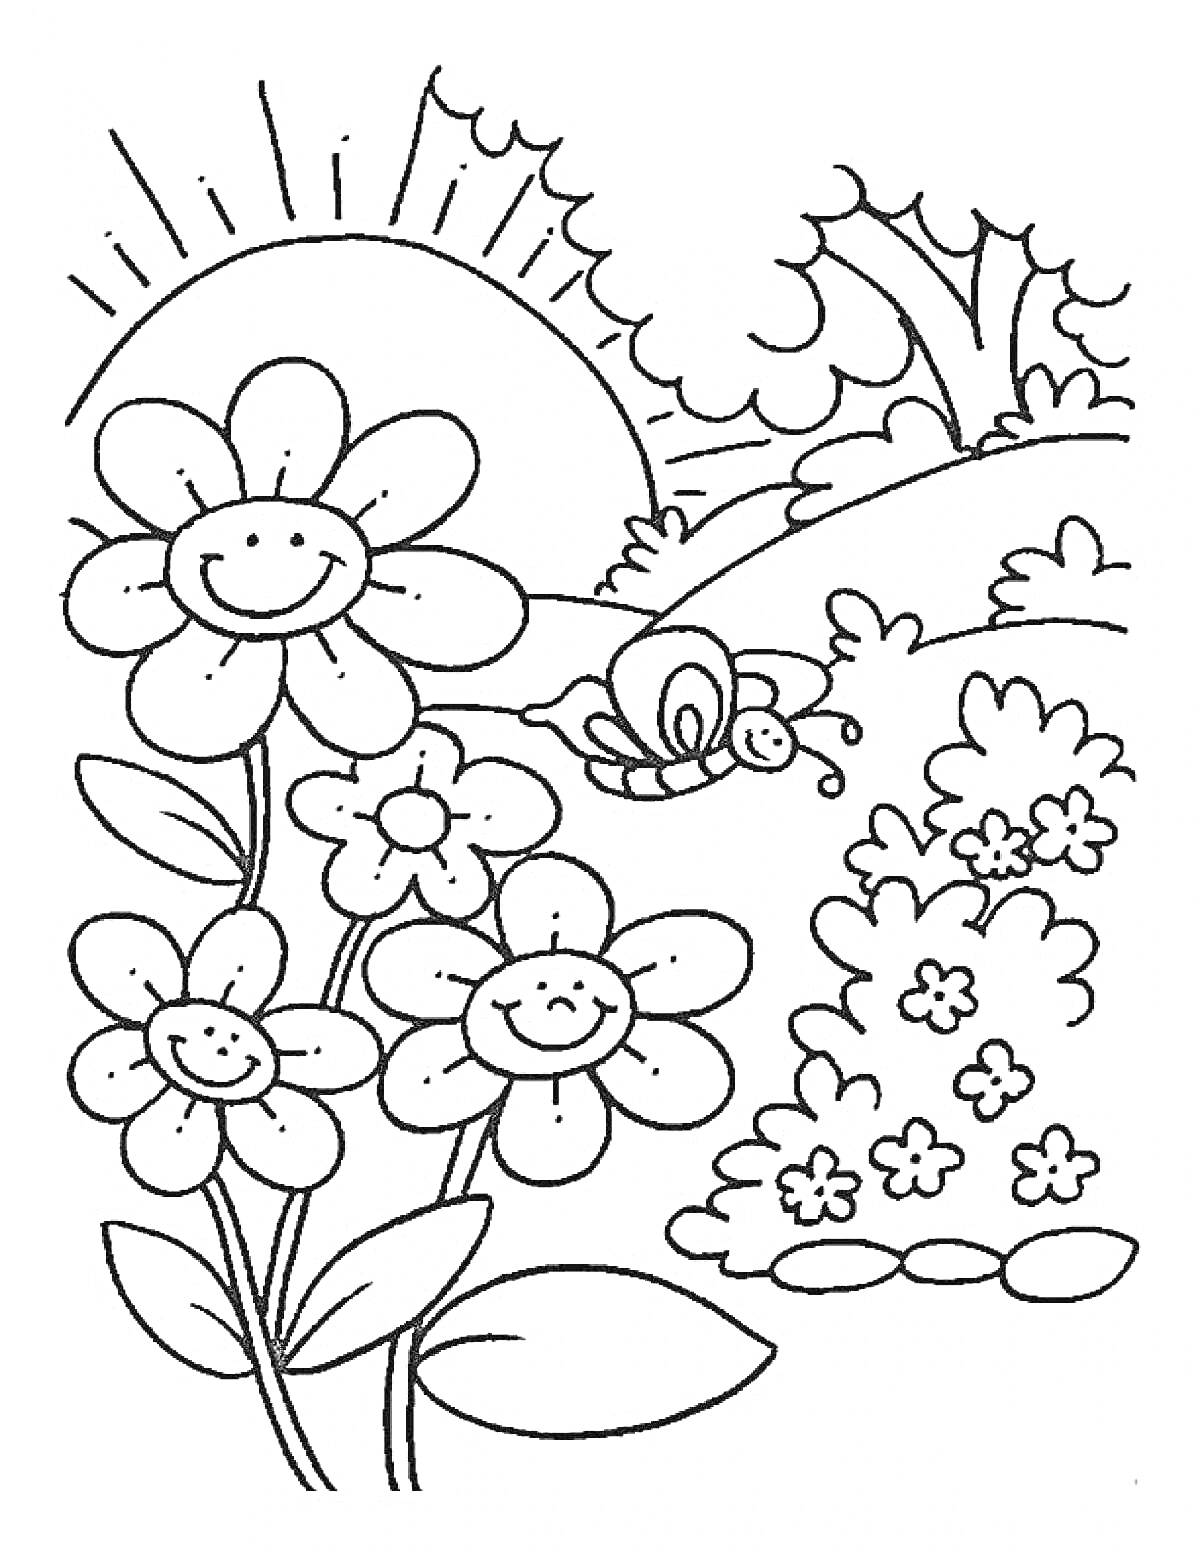 Раскраска Цветущий май с солнцем, деревьями, цветами и пчелой